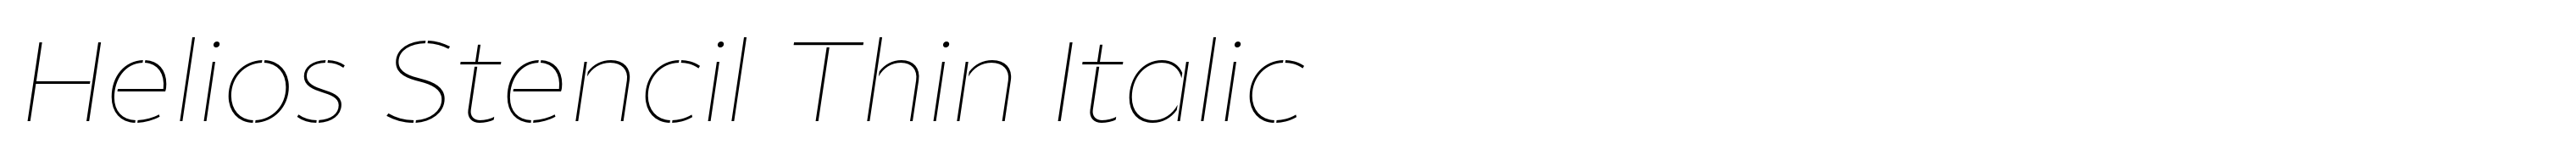 Helios Stencil Thin Italic